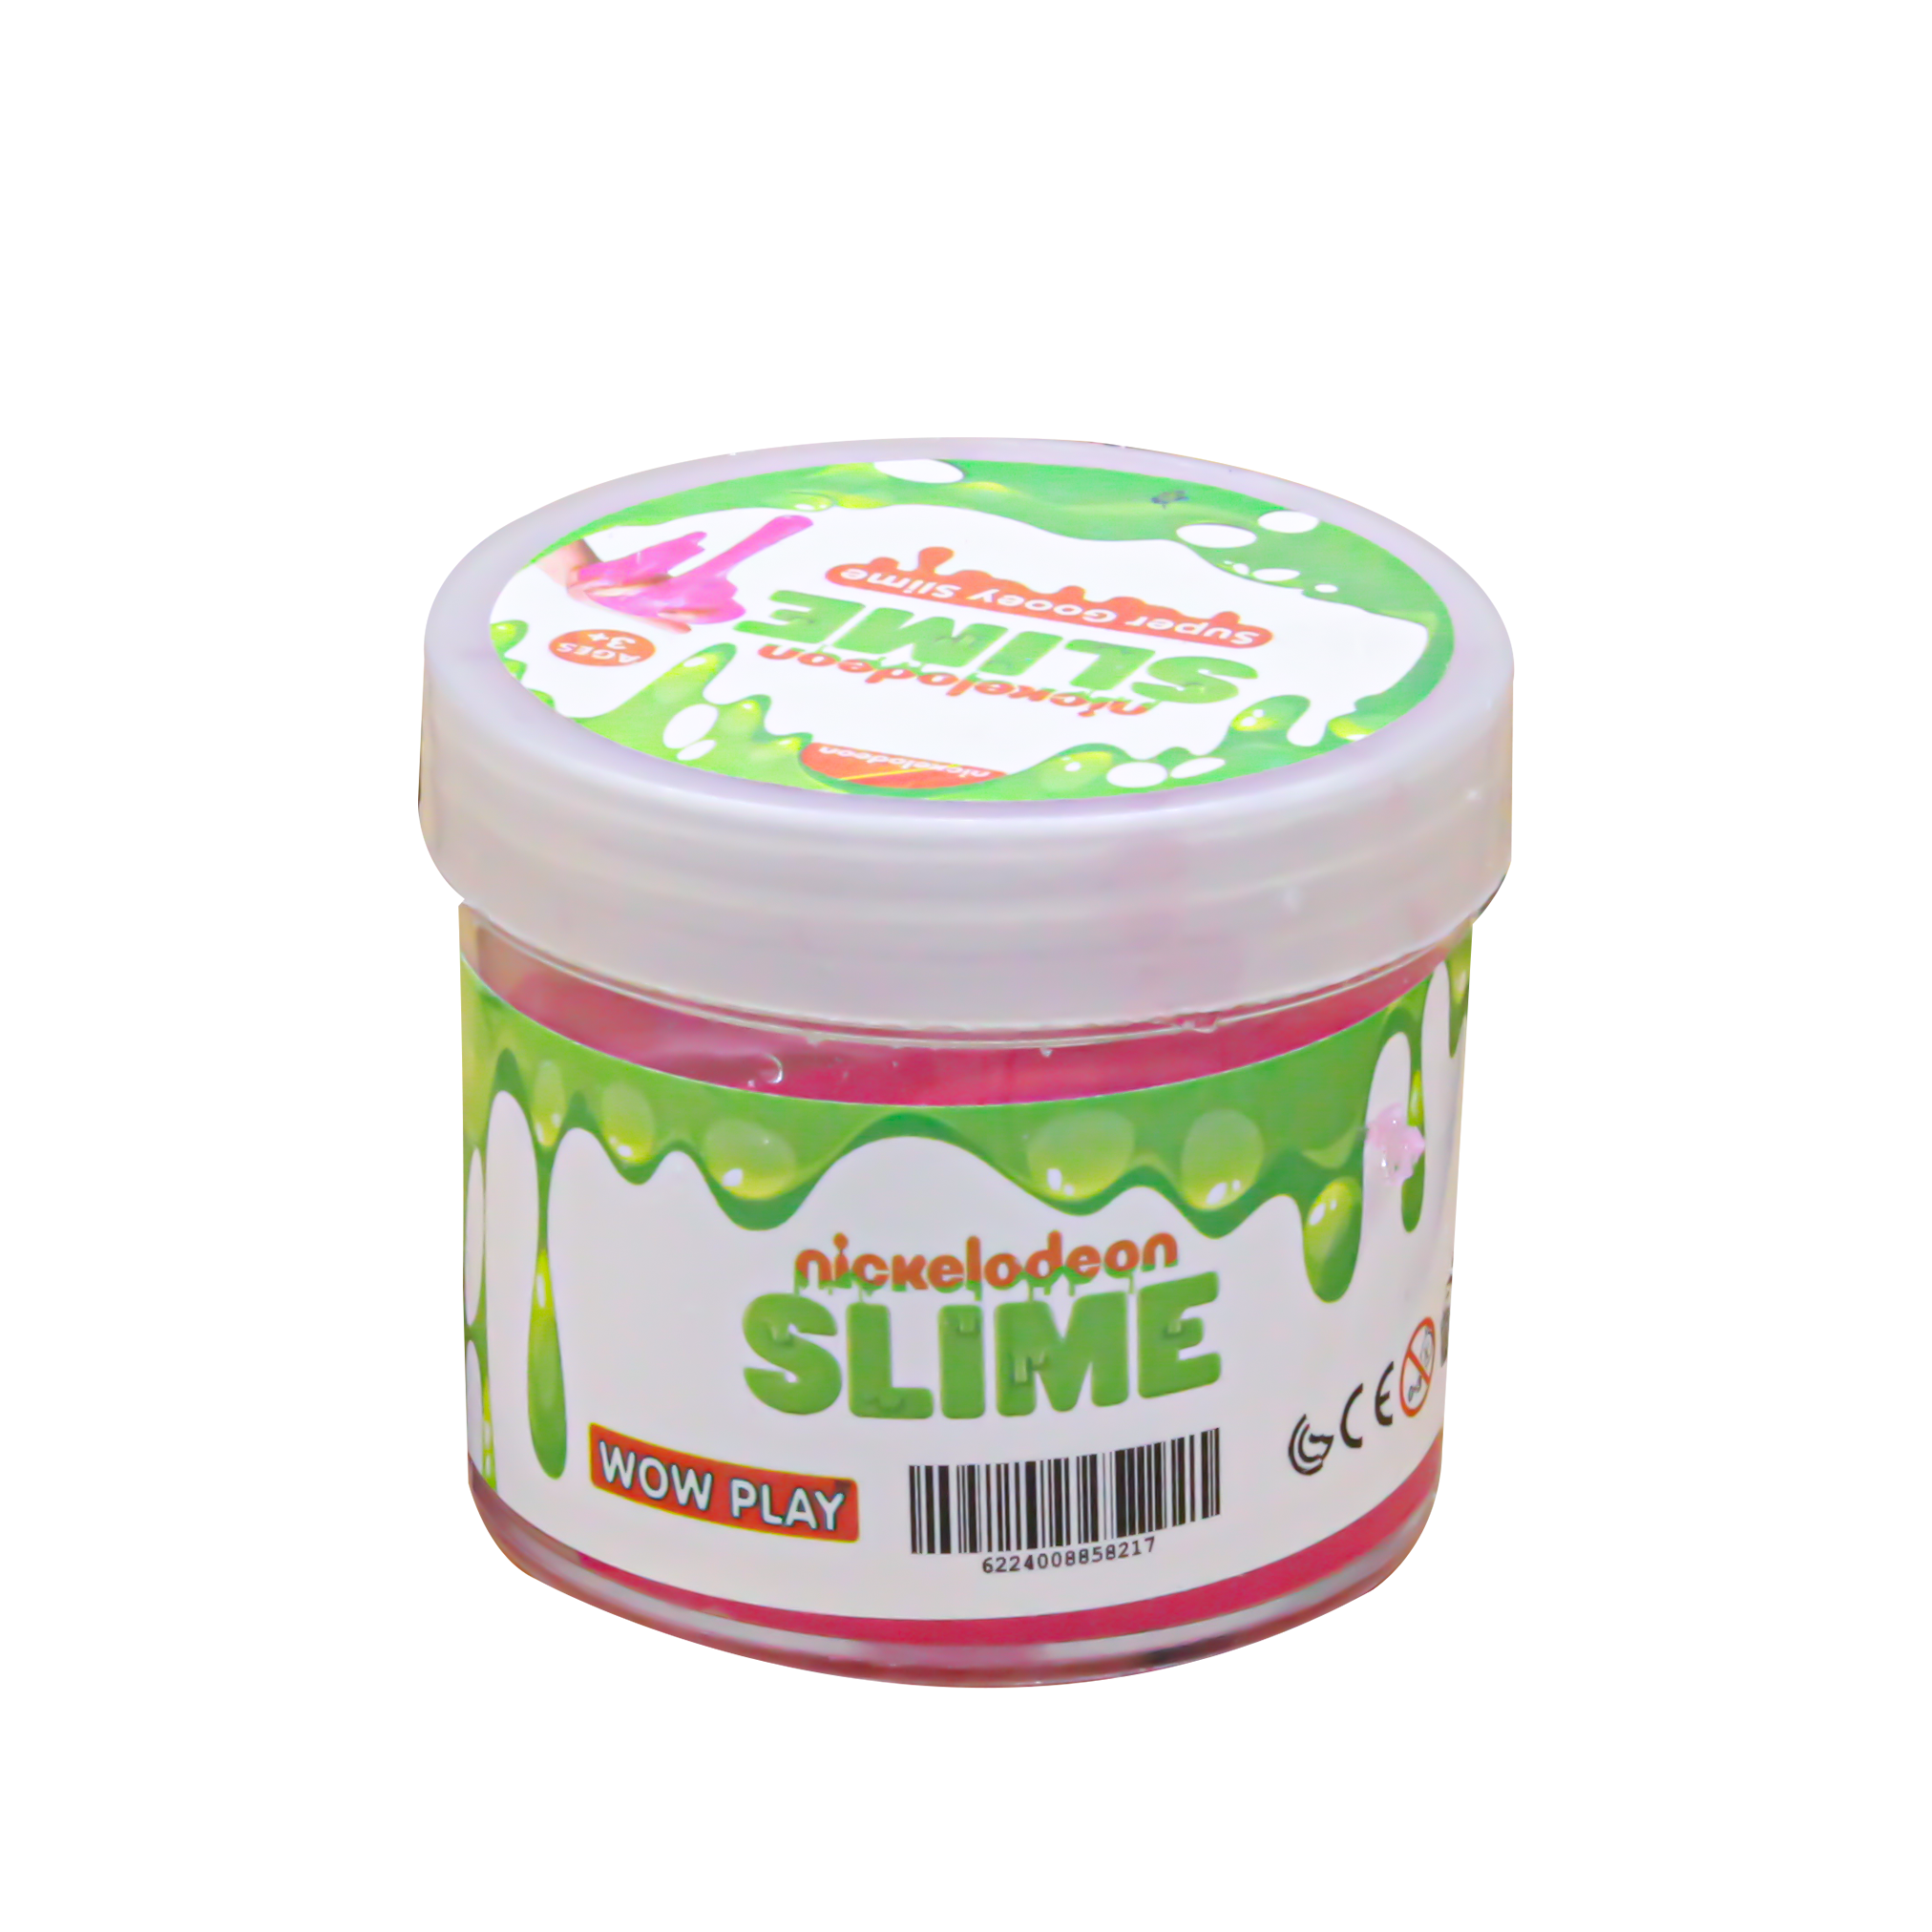 Wow Play Nickelodeon Slime Super Gooey Slime - Pink